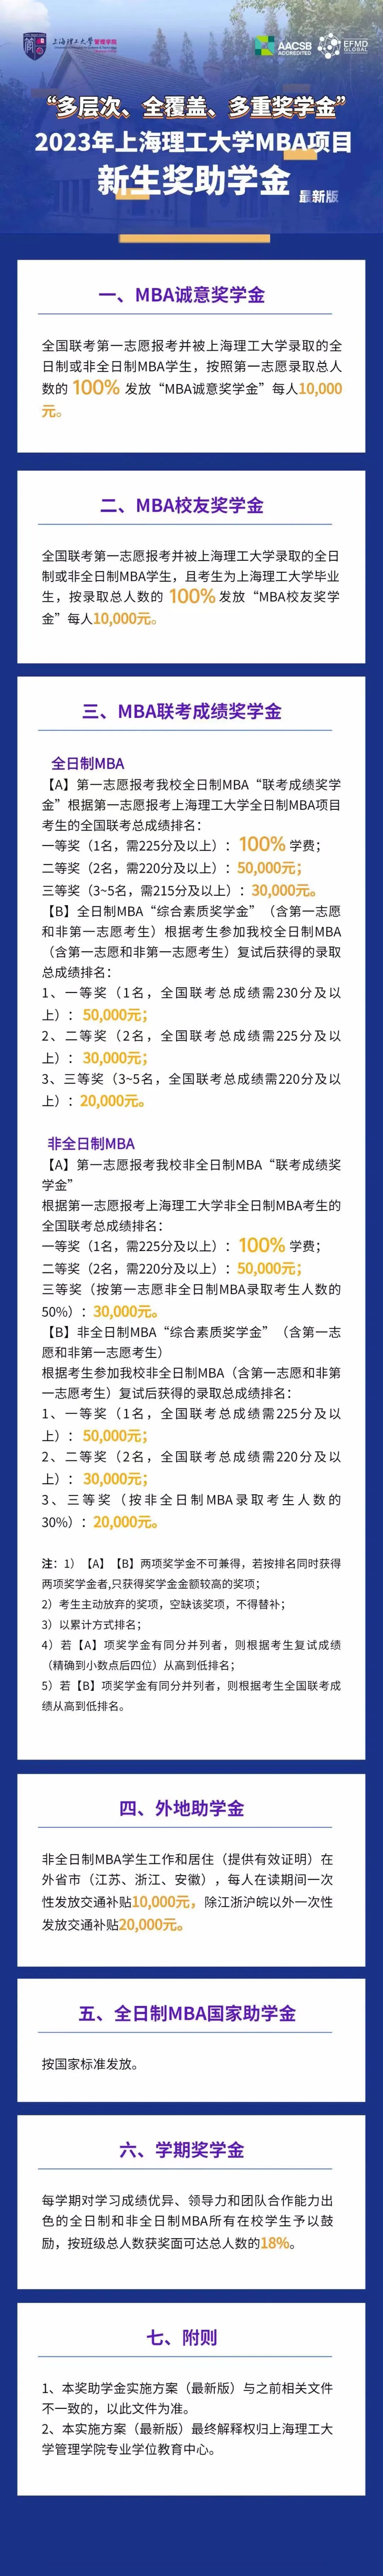 2023年上海理工大学MBA项目新生奖助学金